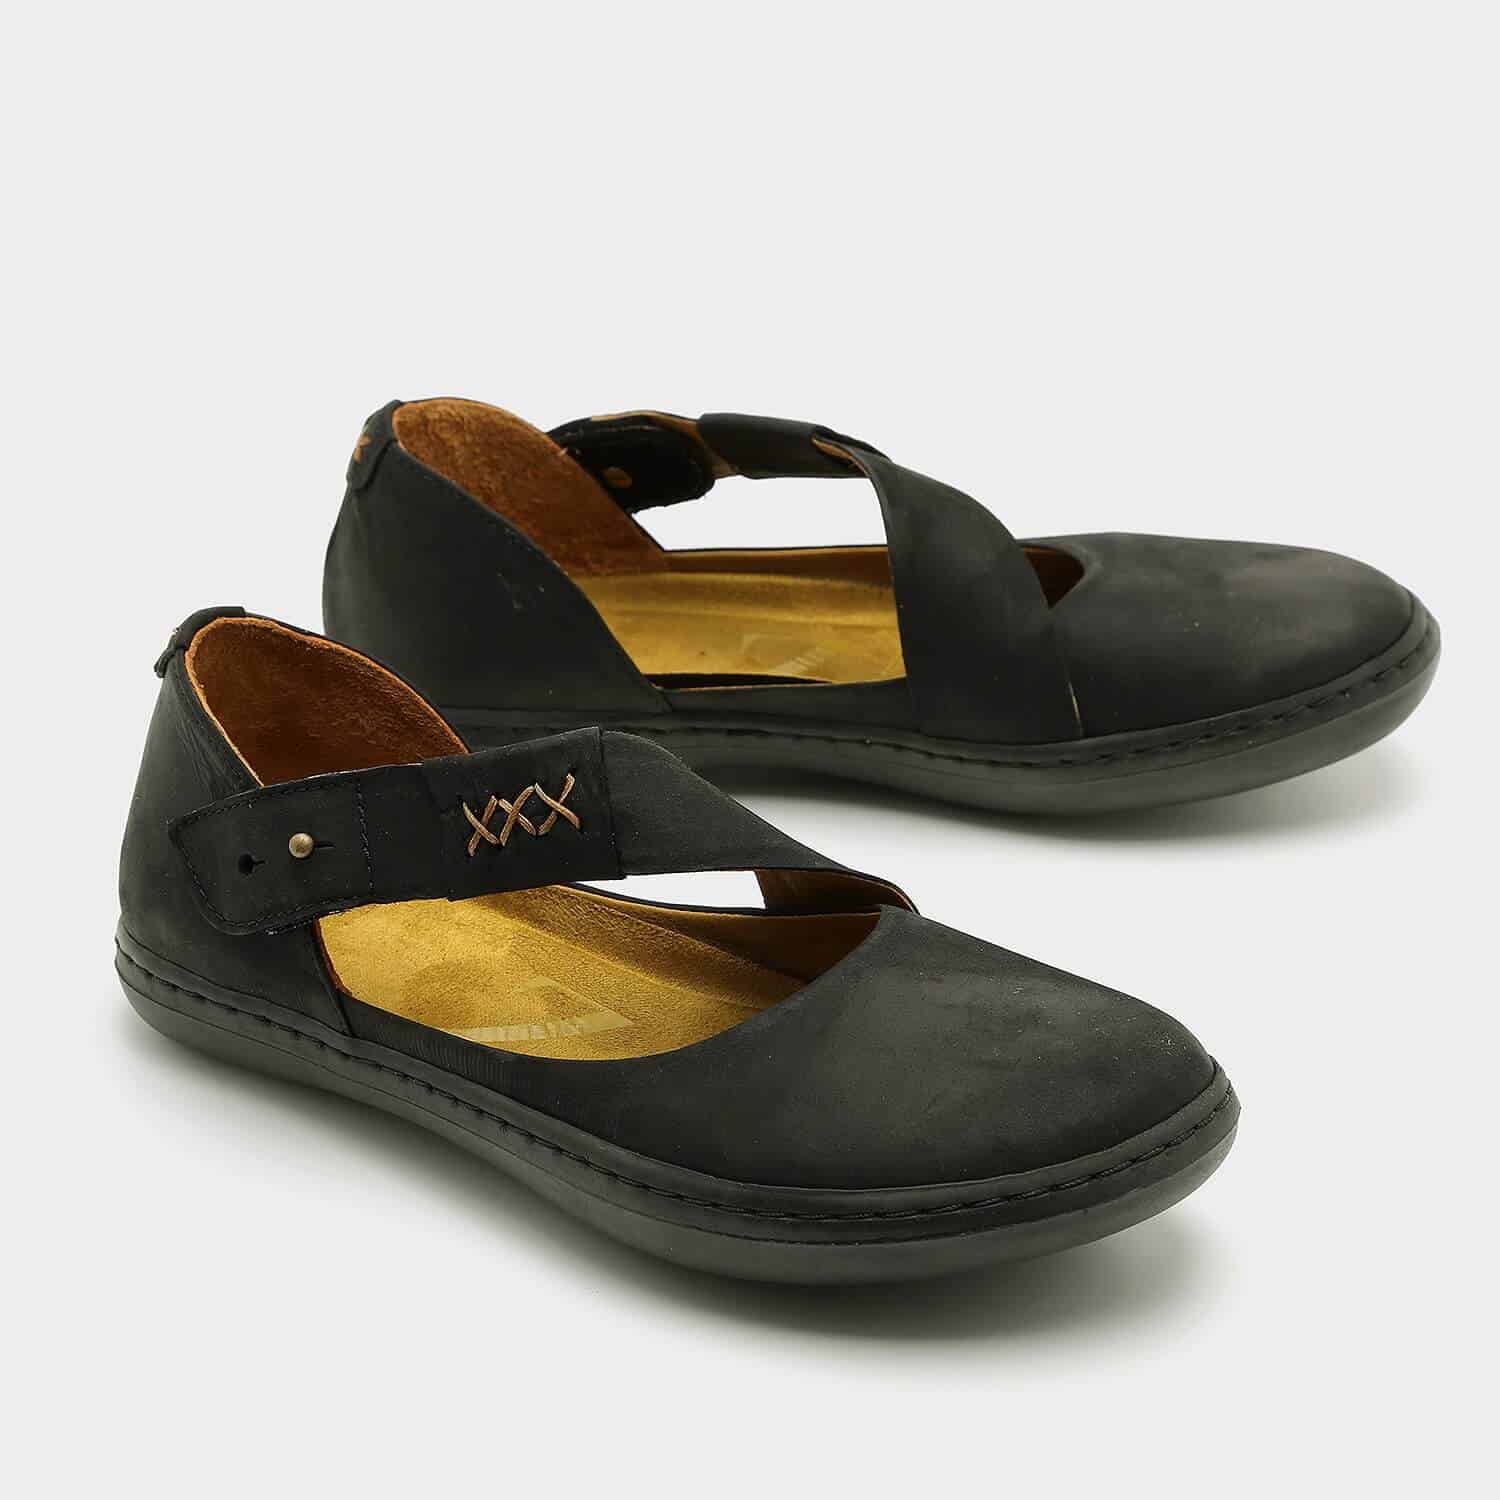 נעליים שטוחות עם רצועת אלכסון – דגם דבש